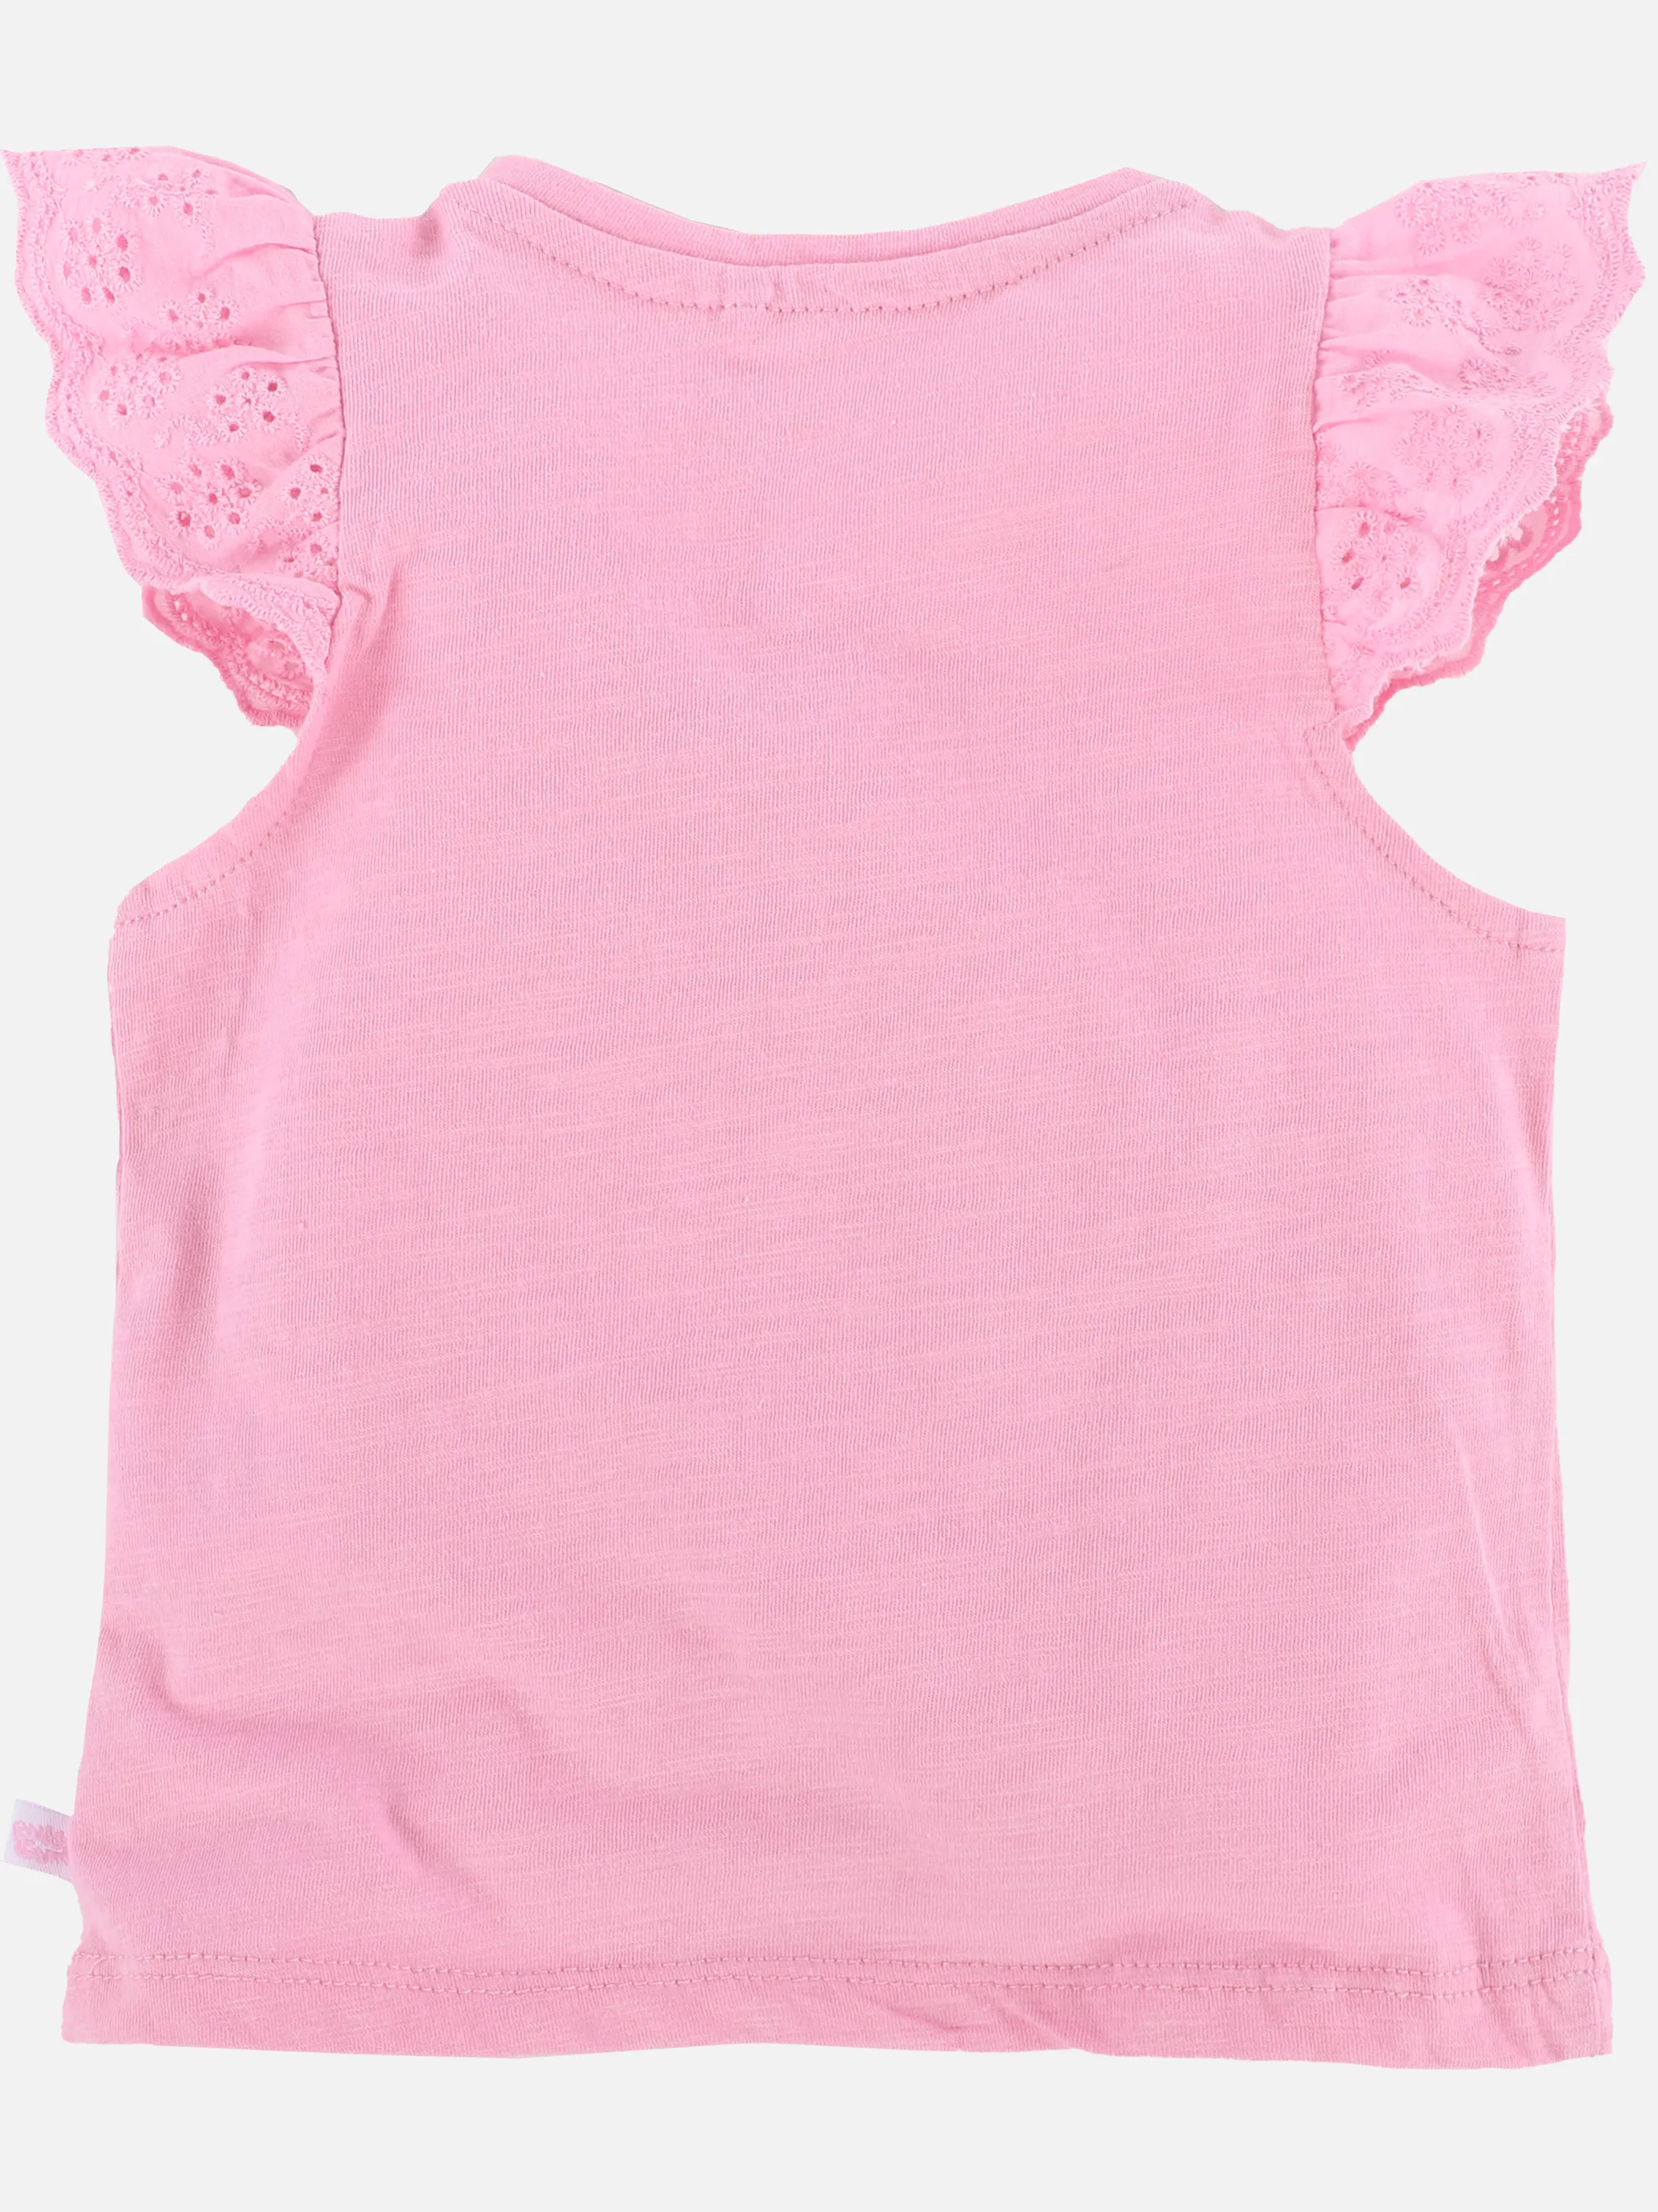 Bubble Gum BM Shirt mit Rüschen in pink Pink 889934 PINK 2